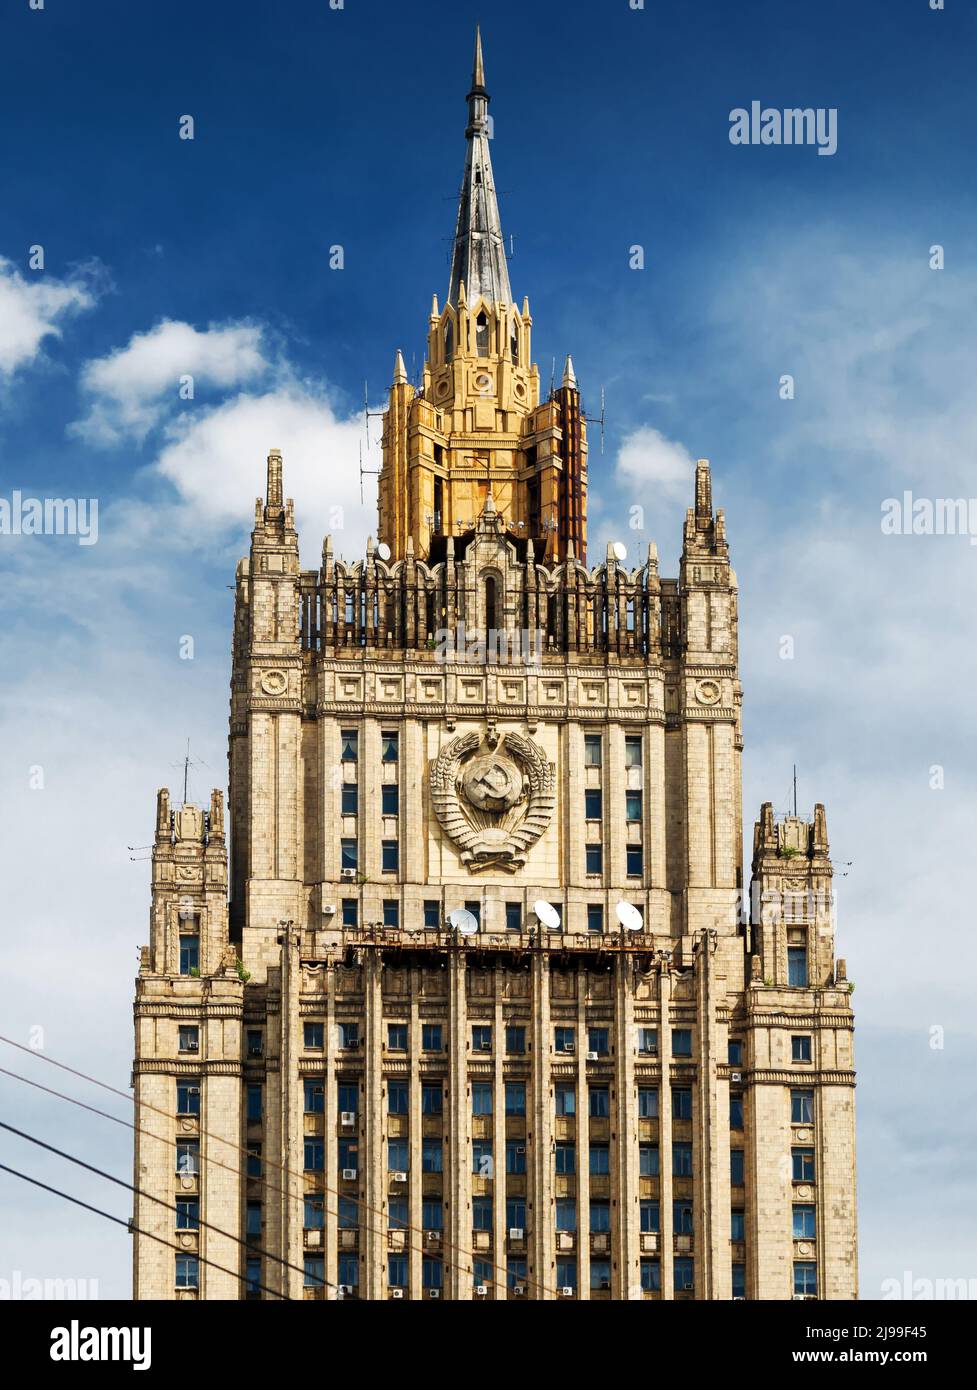 Gebäude des Außenministeriums, Moskau, Russland. Vertikale Ansicht des Ministerhauses, Wahrzeichen von Moskau. Berühmter alter stalinistischer Wolkenkratzer mit Mantel eines Stockfoto